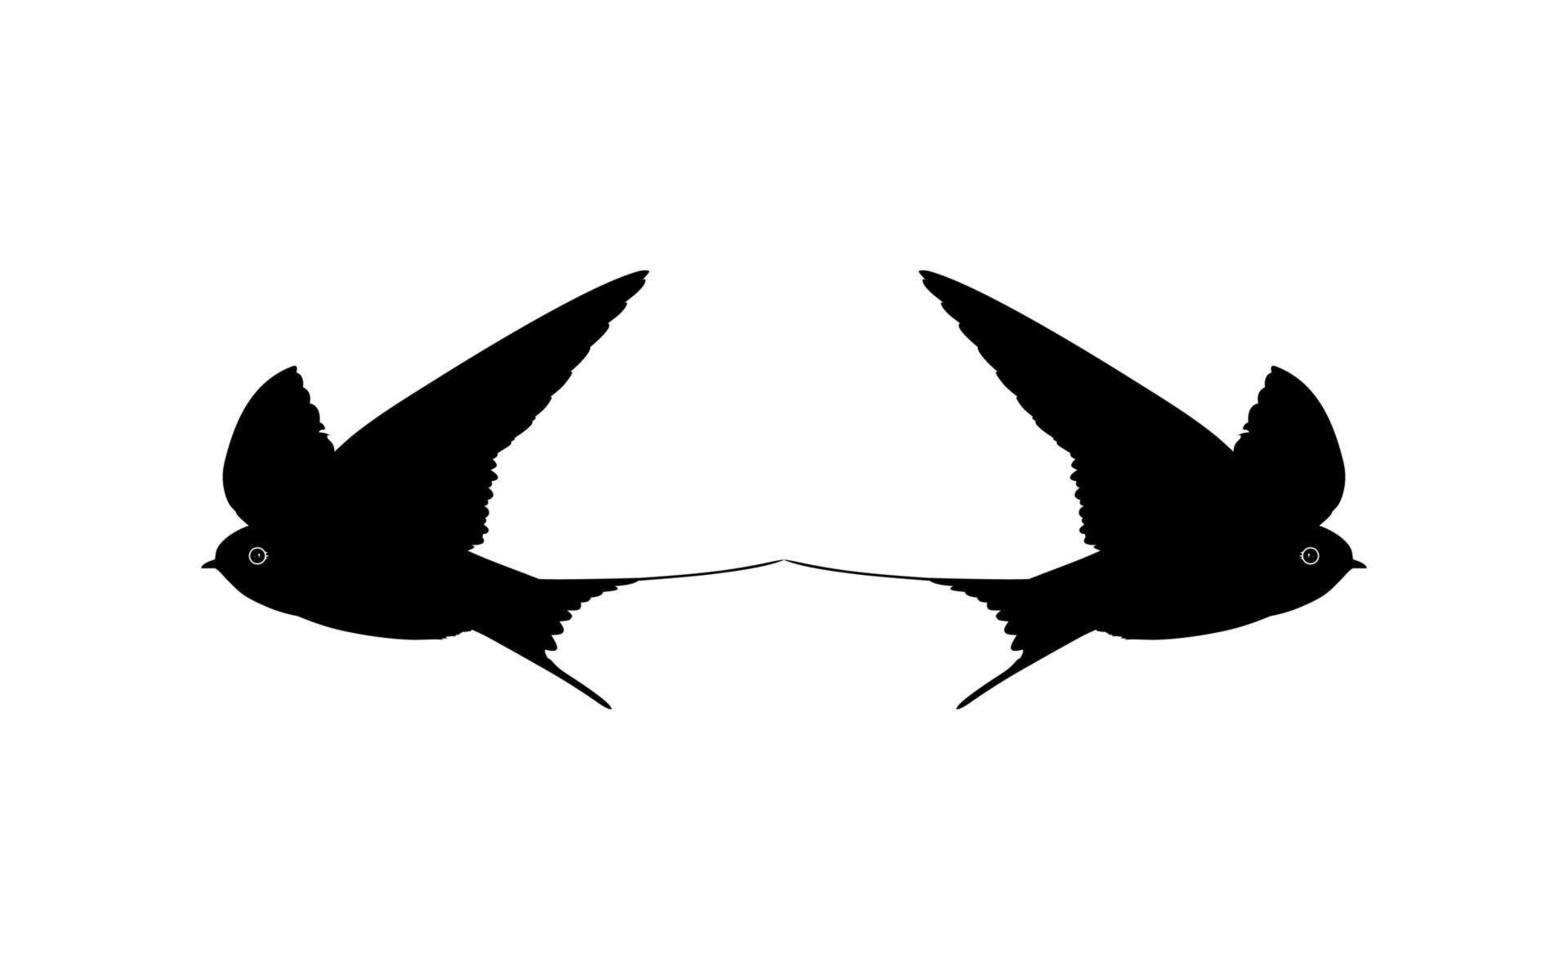 par de la silueta de pájaro golondrina voladora para logotipo, pictograma, sitio web. ilustración de arte o elemento de diseño gráfico. vector